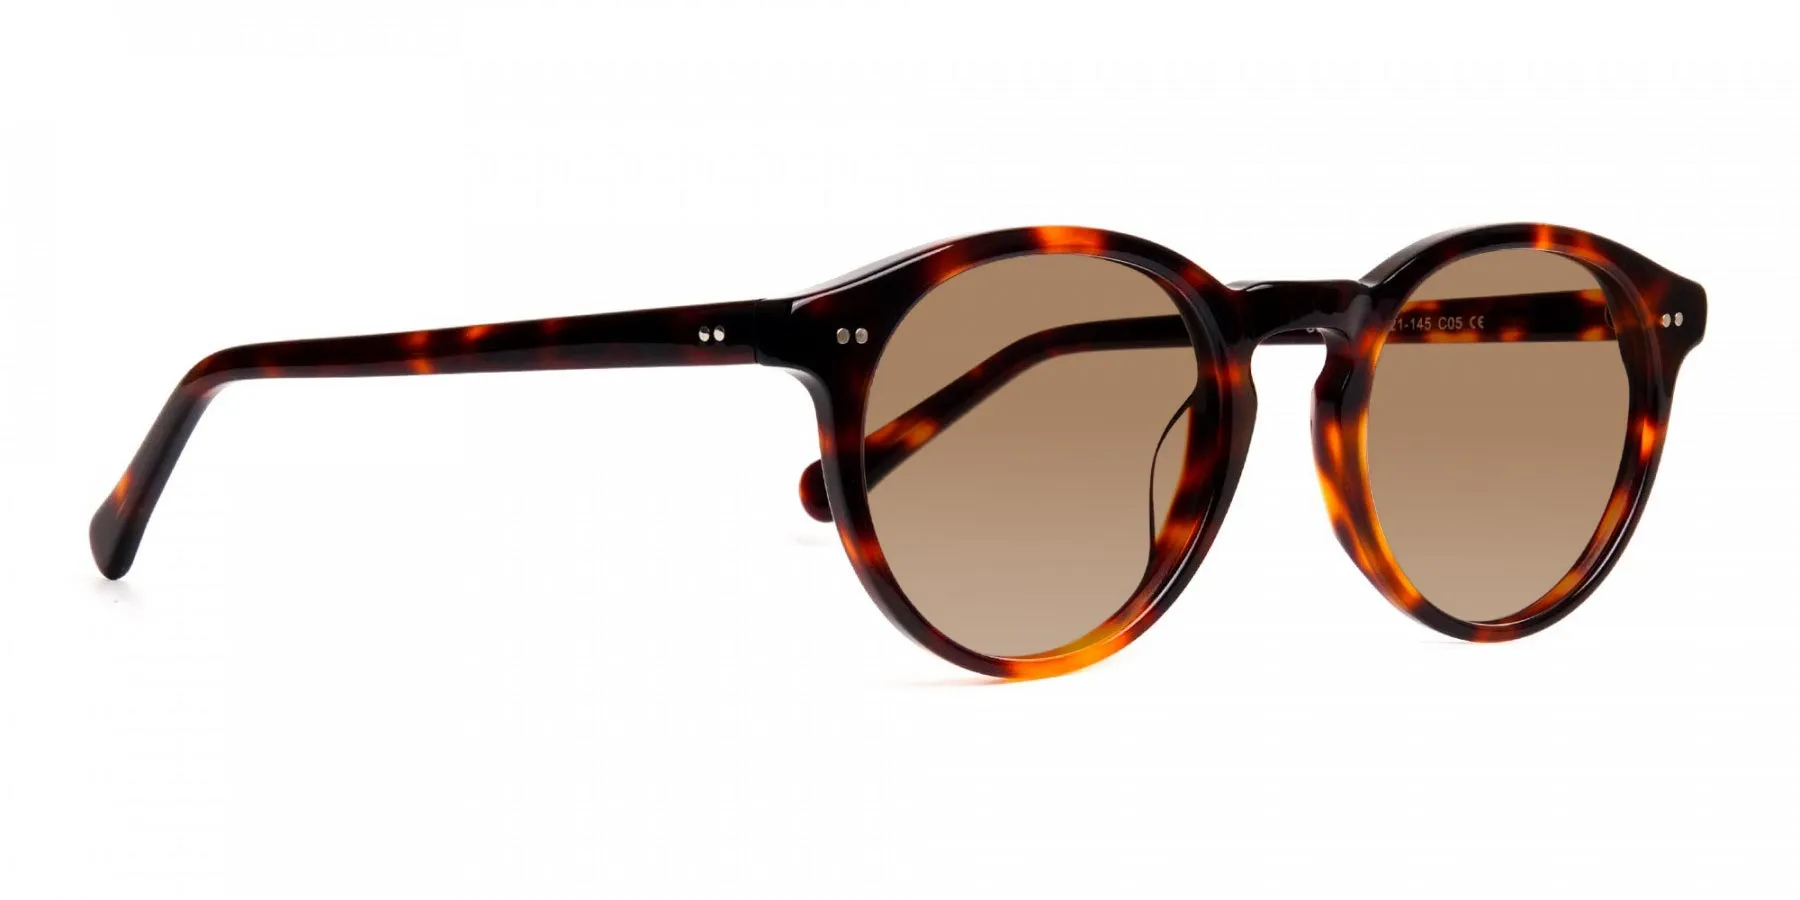 brown tortoiseshell sunglasses-2